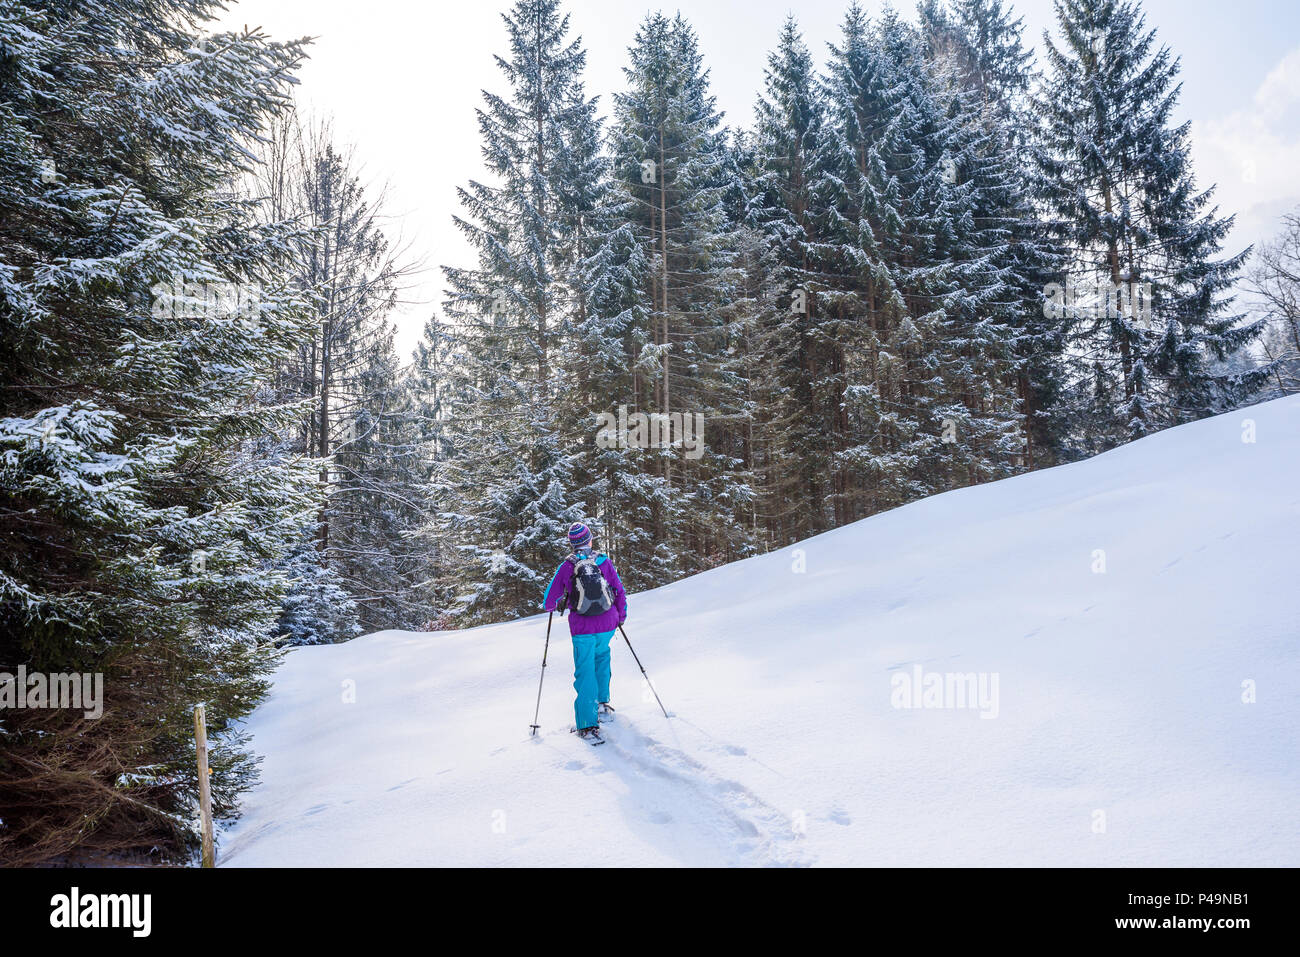 Randonneur en raquettes sur le sentier de neige en hiver paysage de forêt à Oberstdorf, en Bavière dans les Alpes au sud de l'Allemagne. Beau paysage avec les conifères Banque D'Images